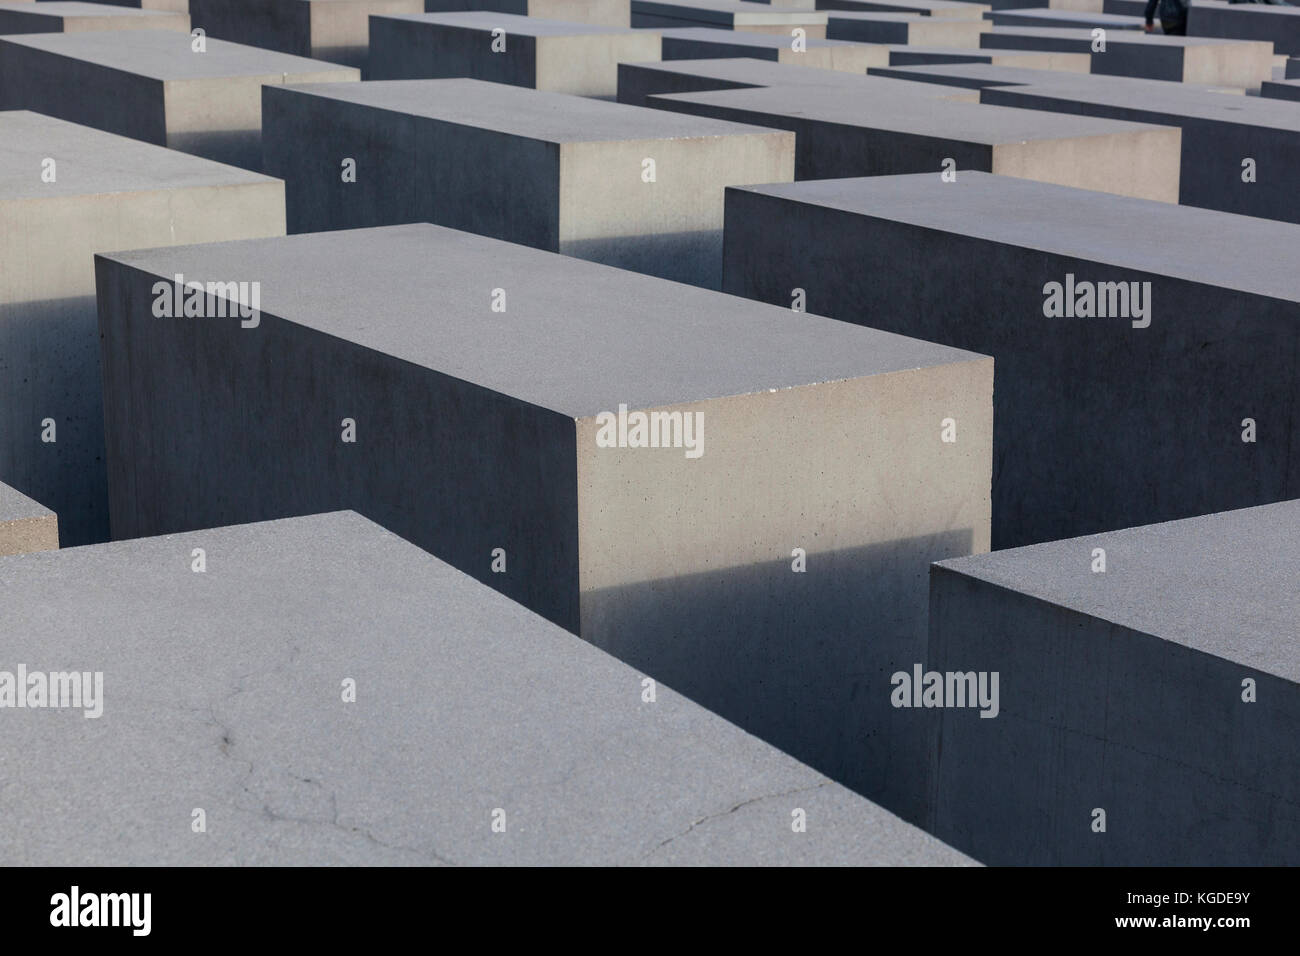 Denkmal für die ermordeten Juden Europas. Berlin, Deutschland Stockfoto